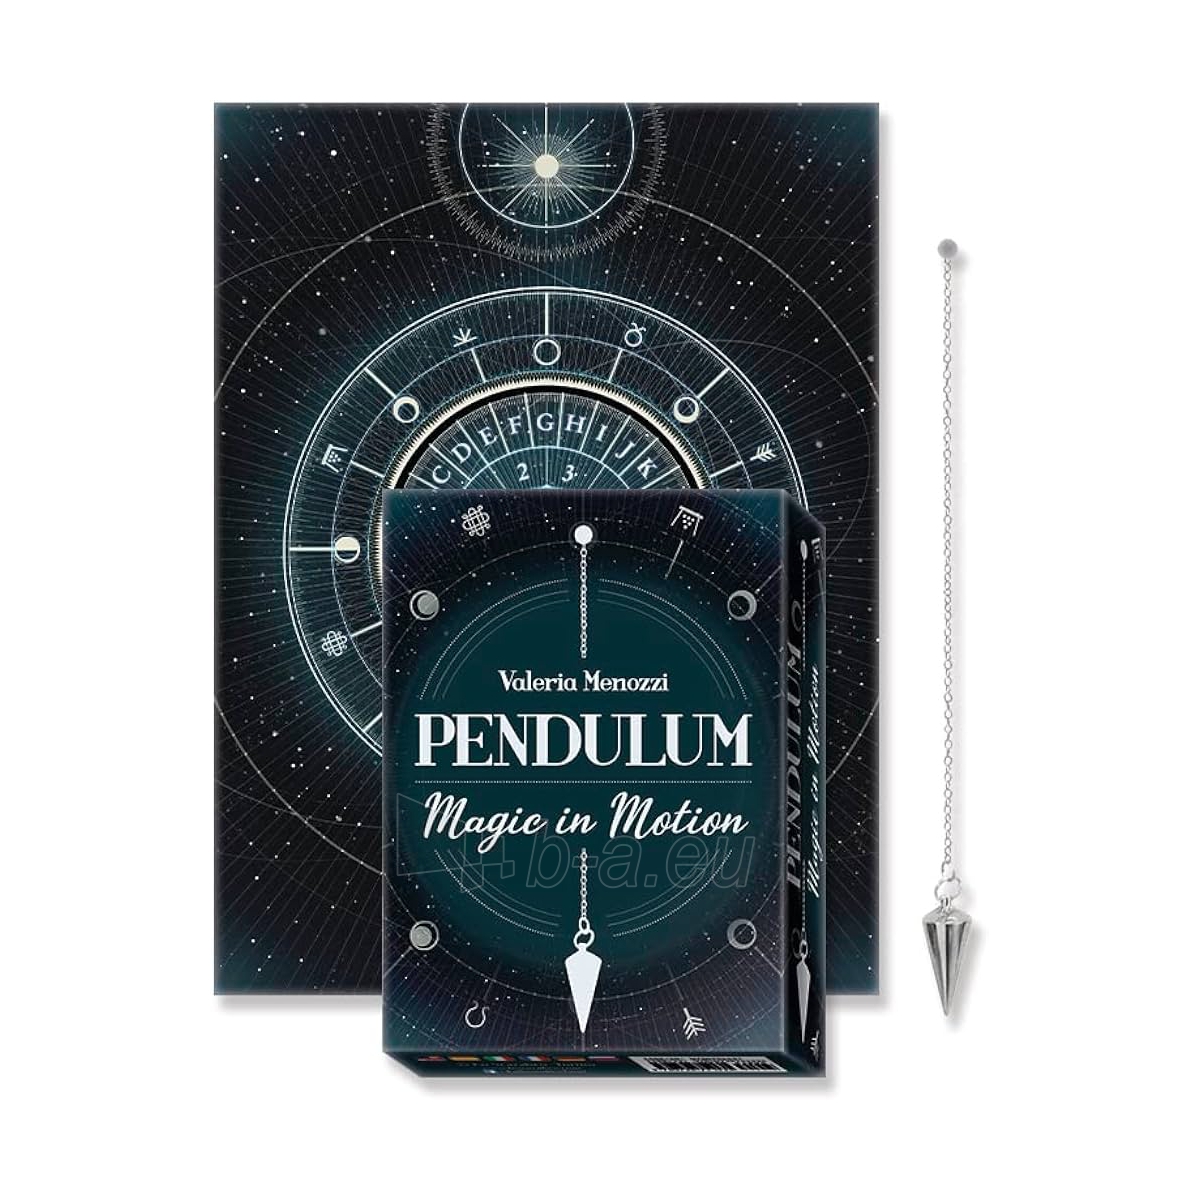 Švytuoklės rinkinys Pendulum Magic in Motion Lo Scarabeo paveikslėlis 1 iš 5